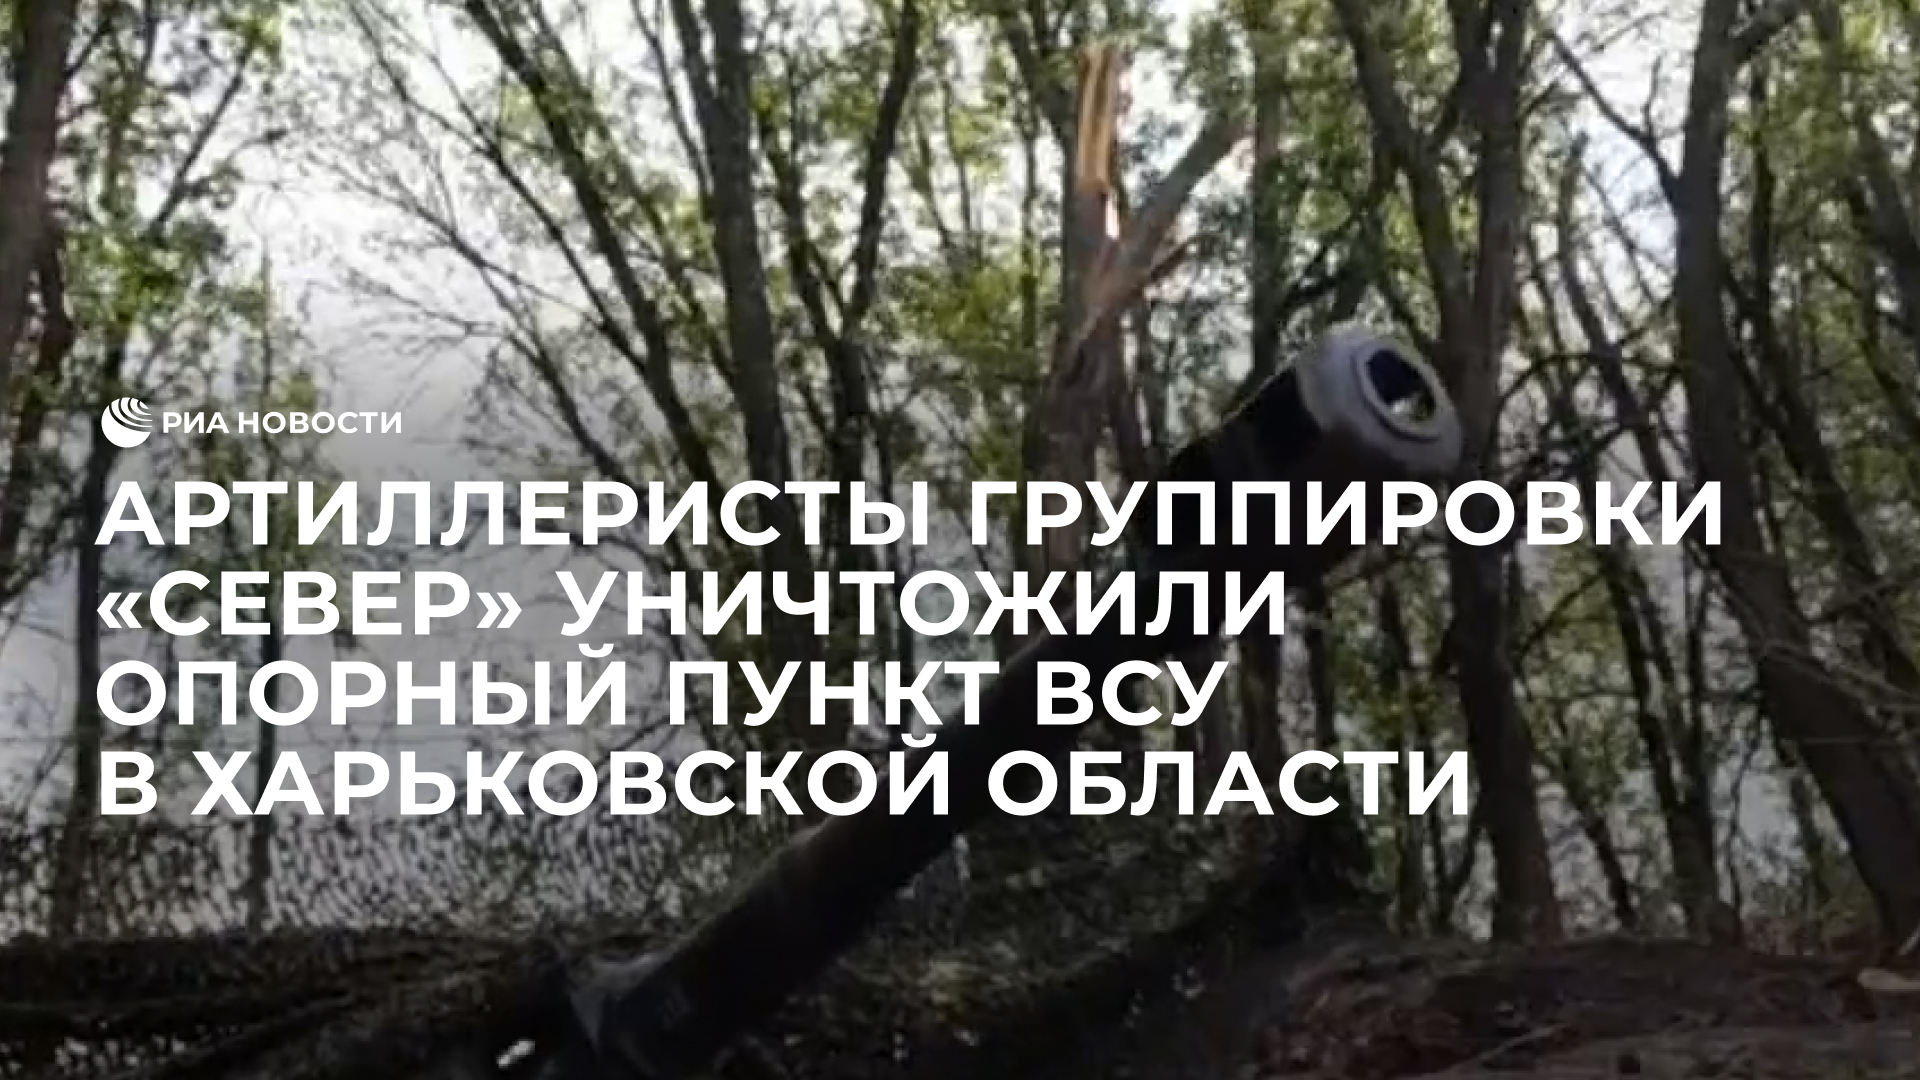 Артиллеристы группировки «Север» уничтожили опорный пункт ВСУ в Харьковской области